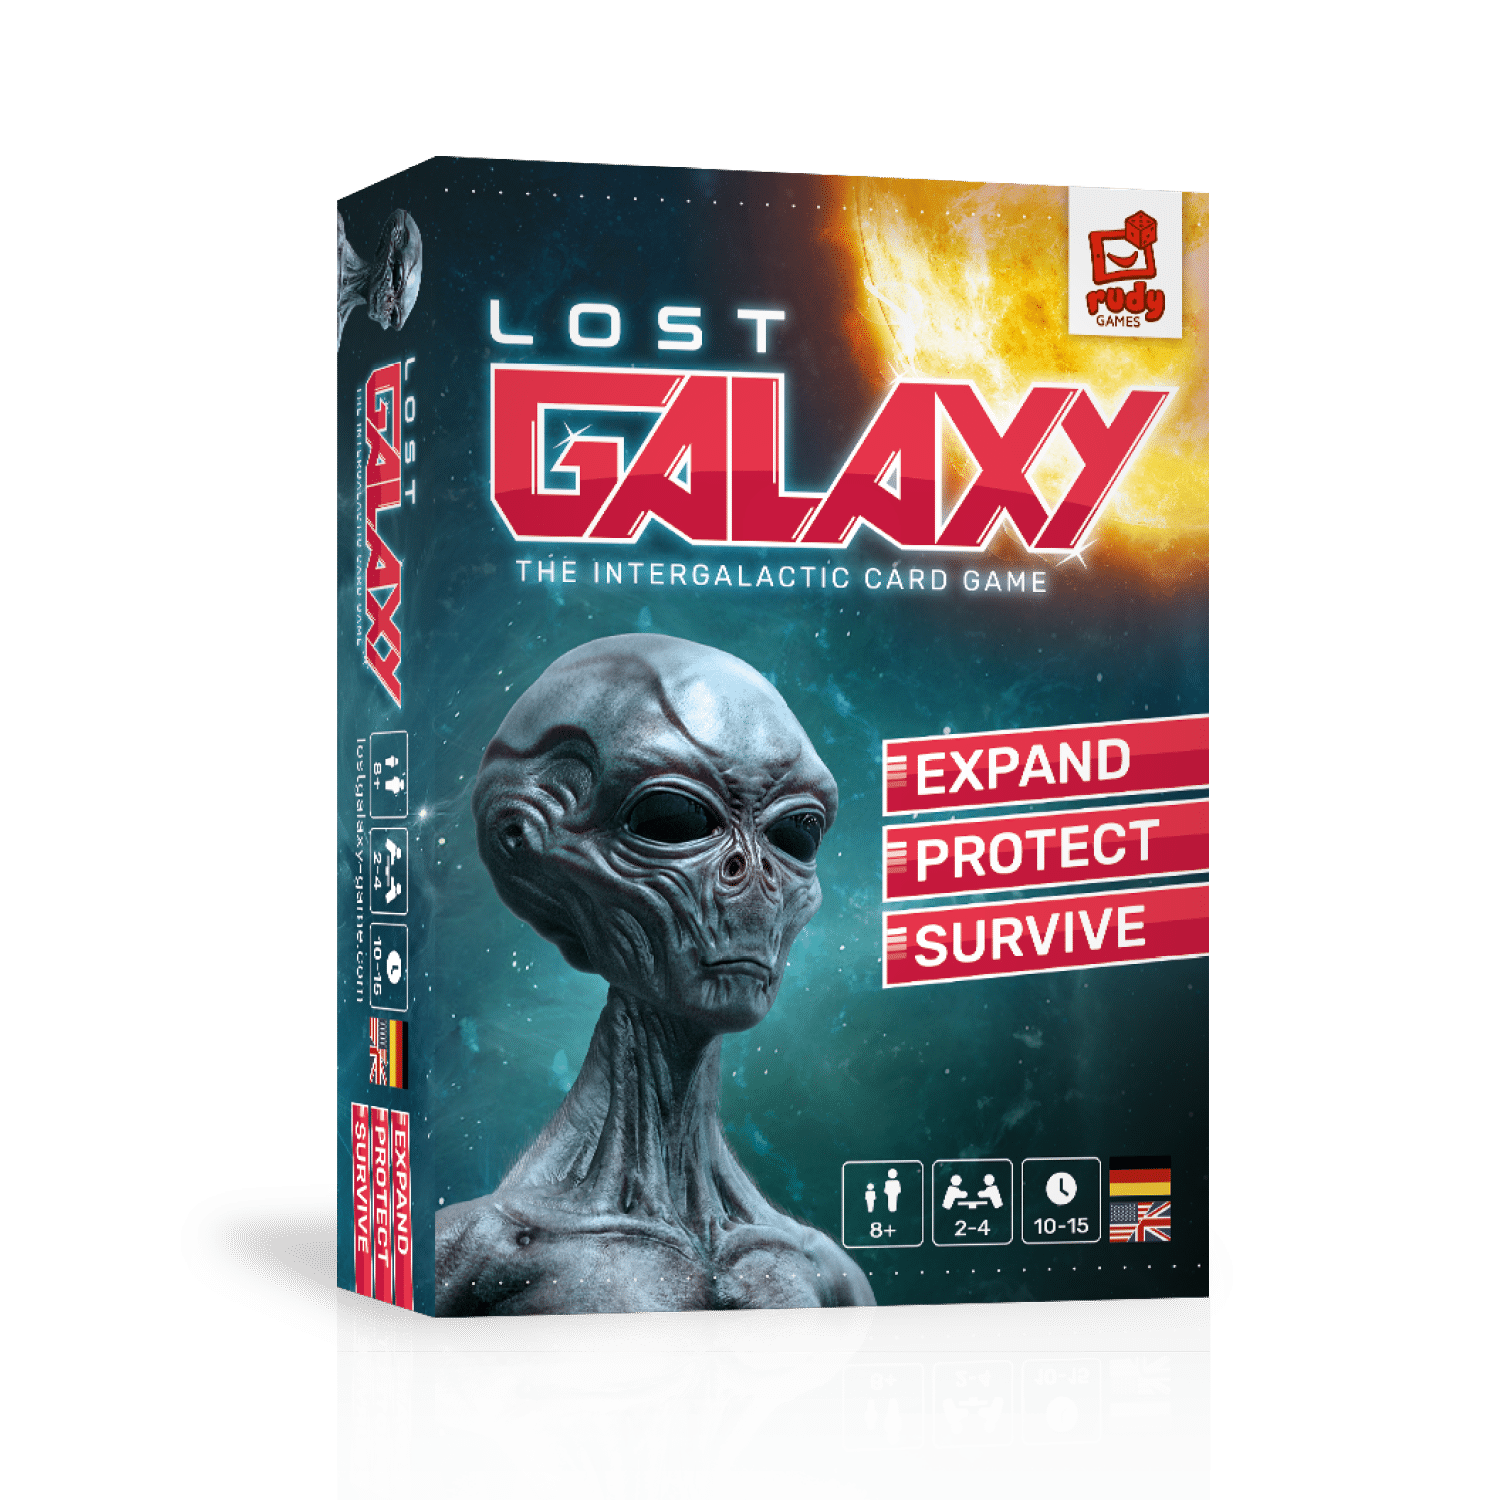 LOST GALAXY - Das intergalaktische Kartenspiel!